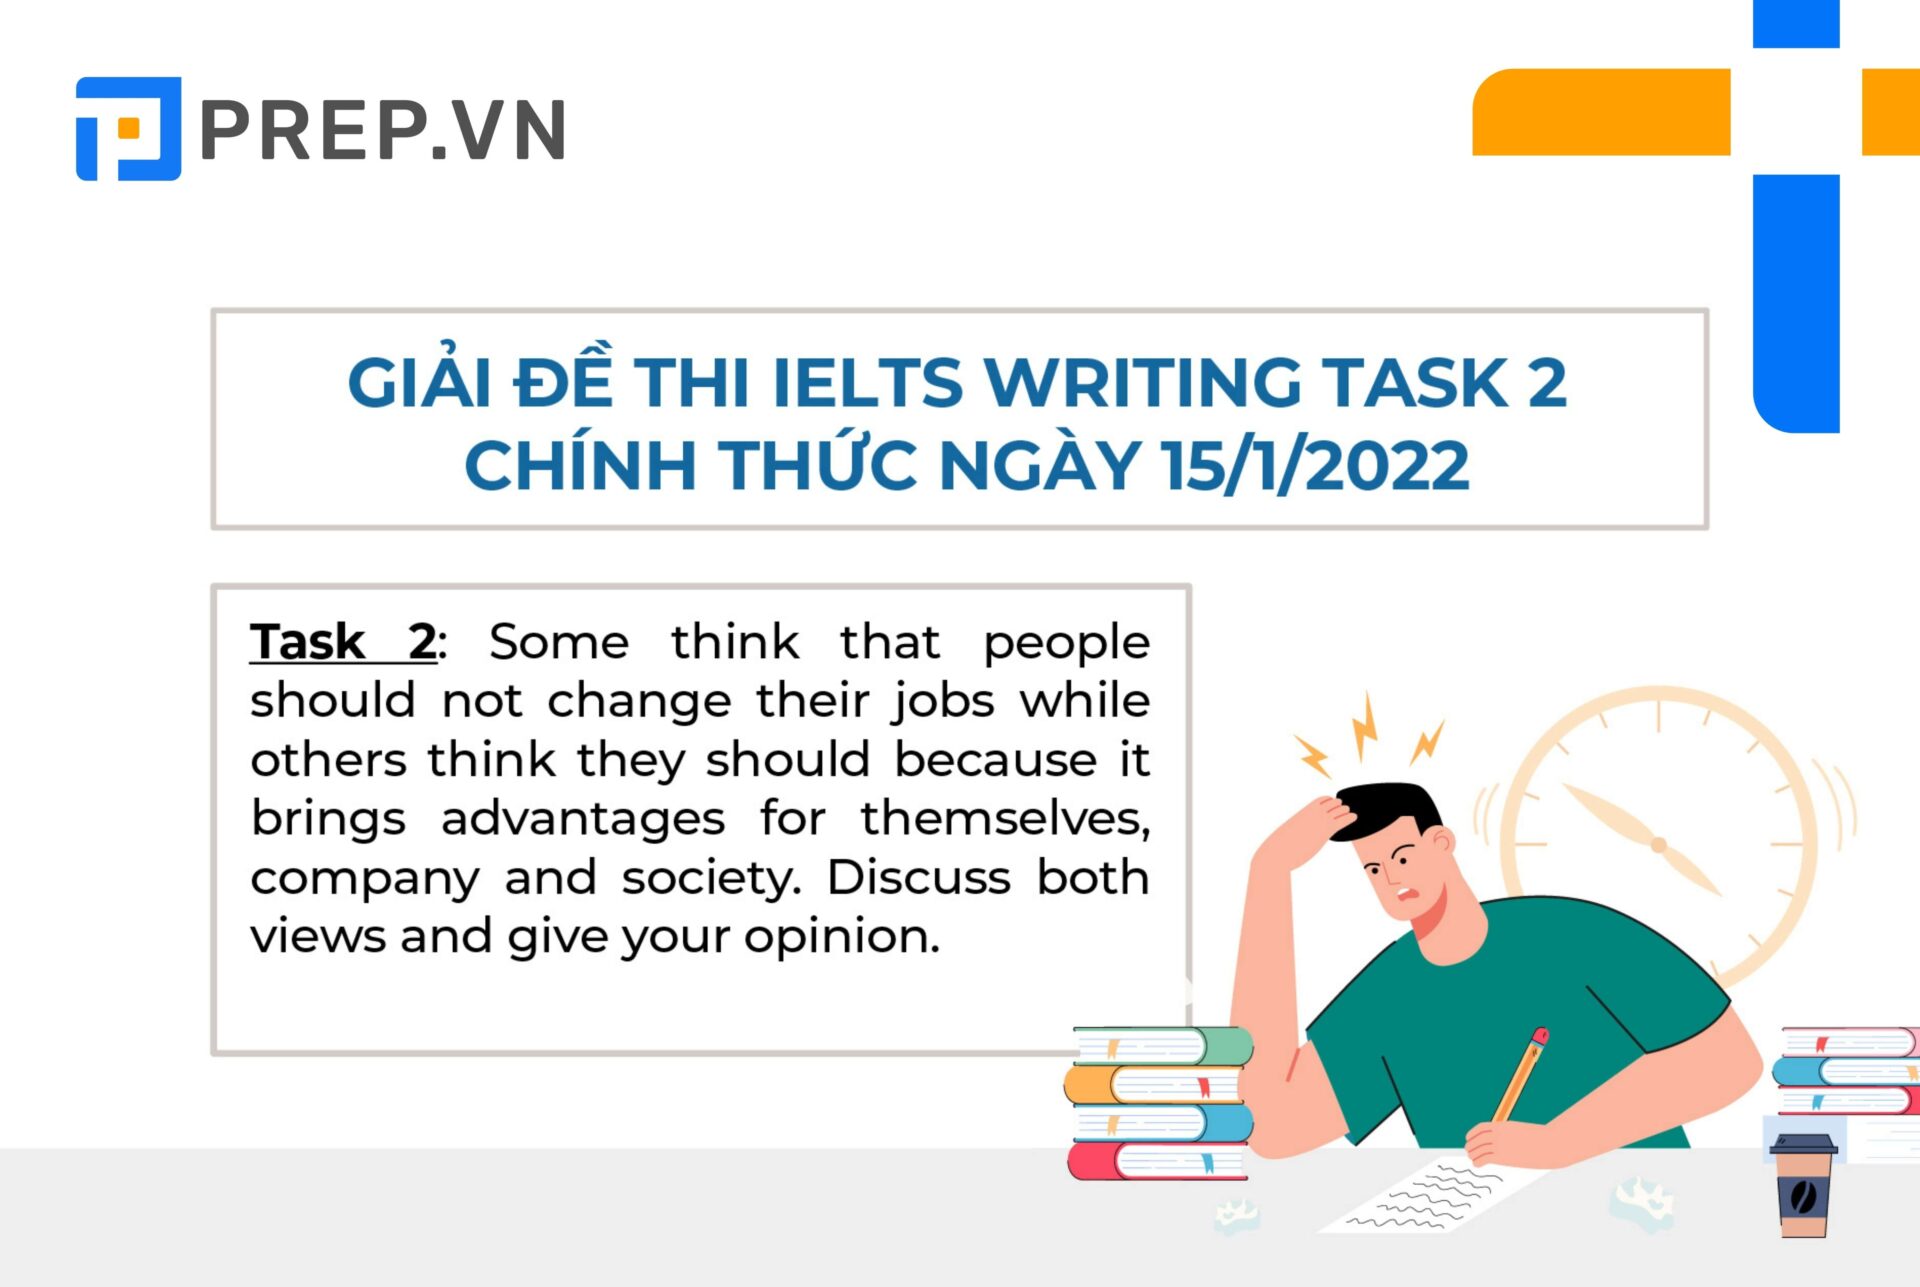 Đề bài bài thi IELTS Writing Task 2 ngày 15/01/2022